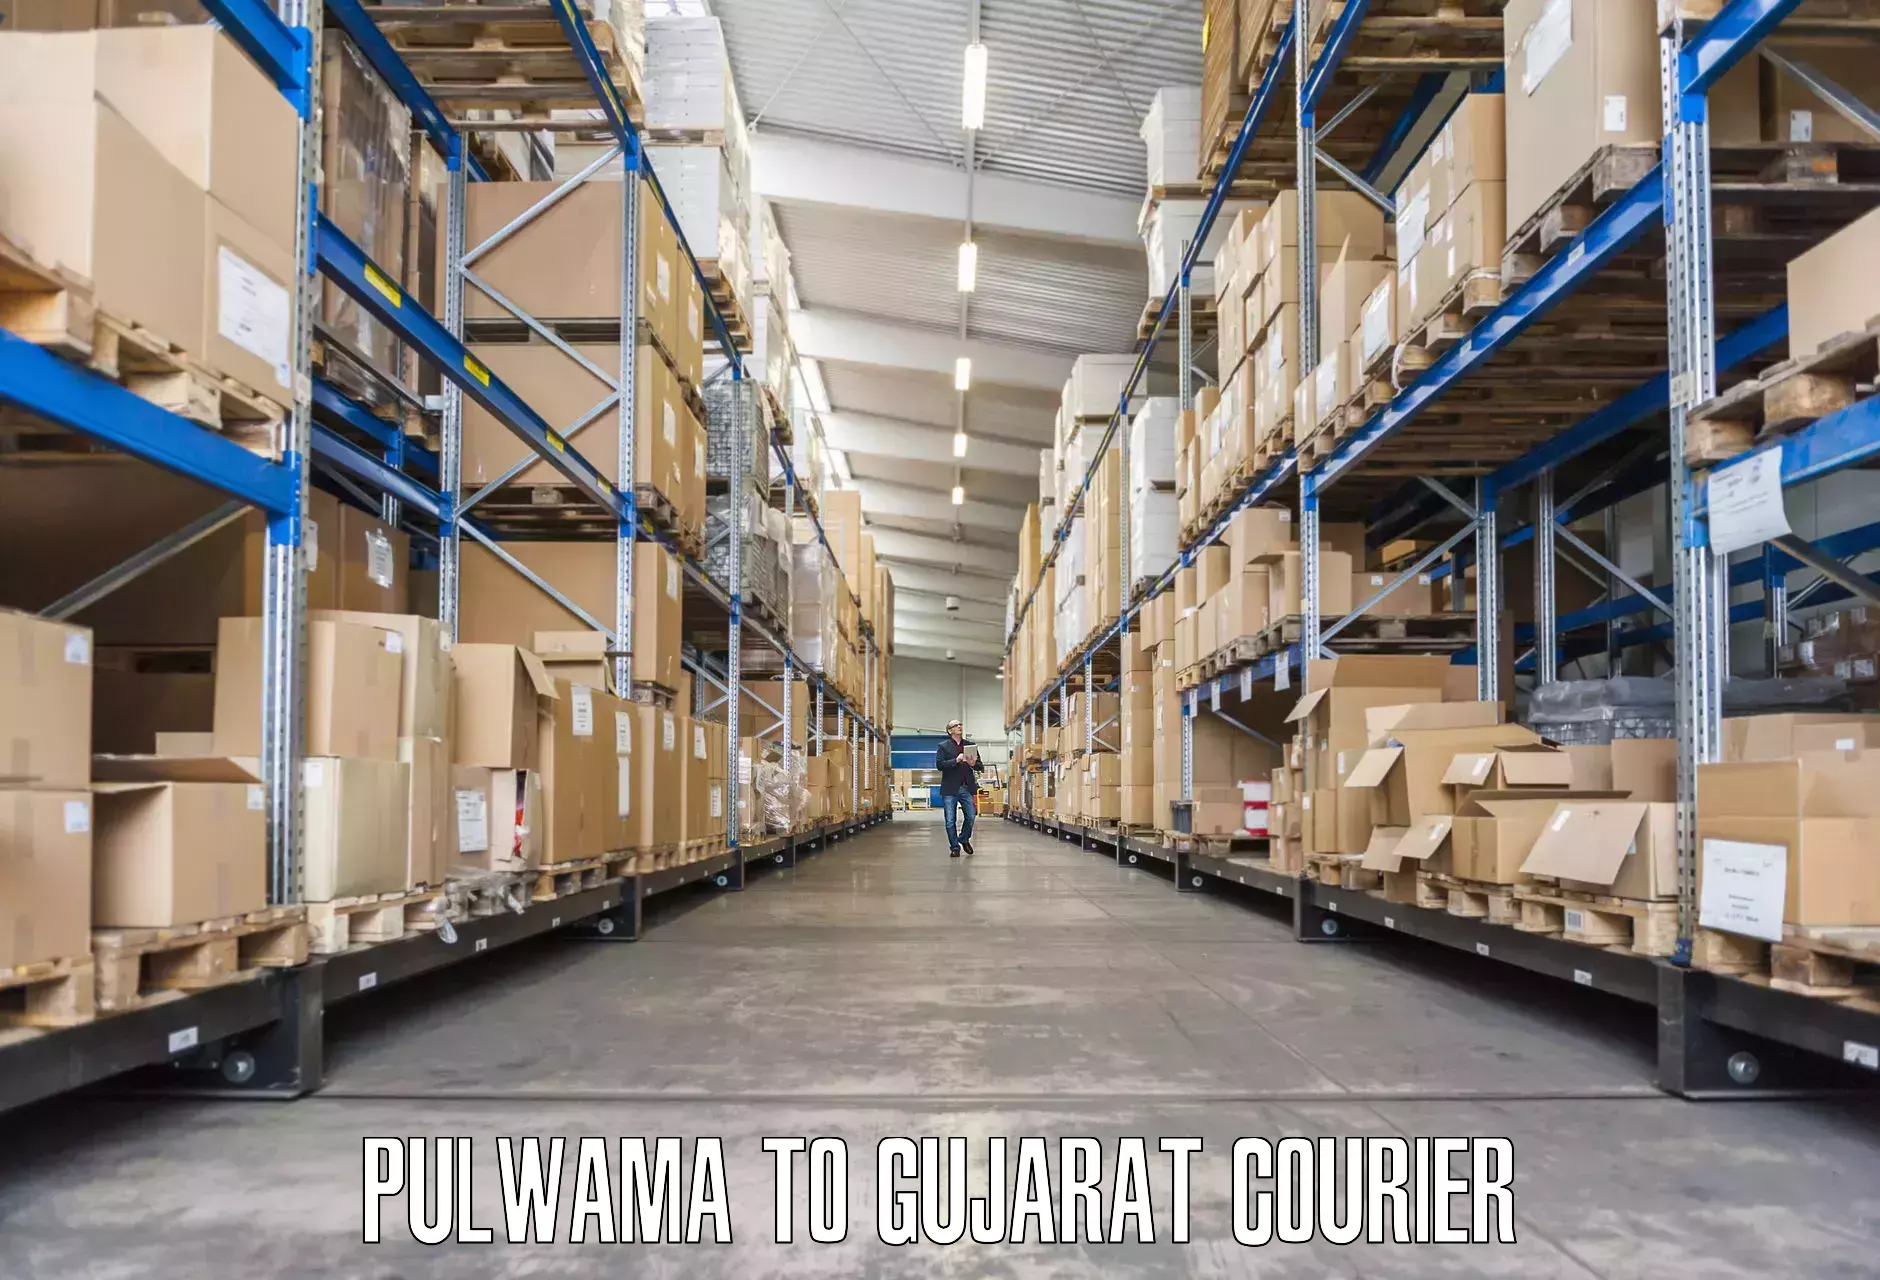 Expert goods movers Pulwama to IIIT Vadodara